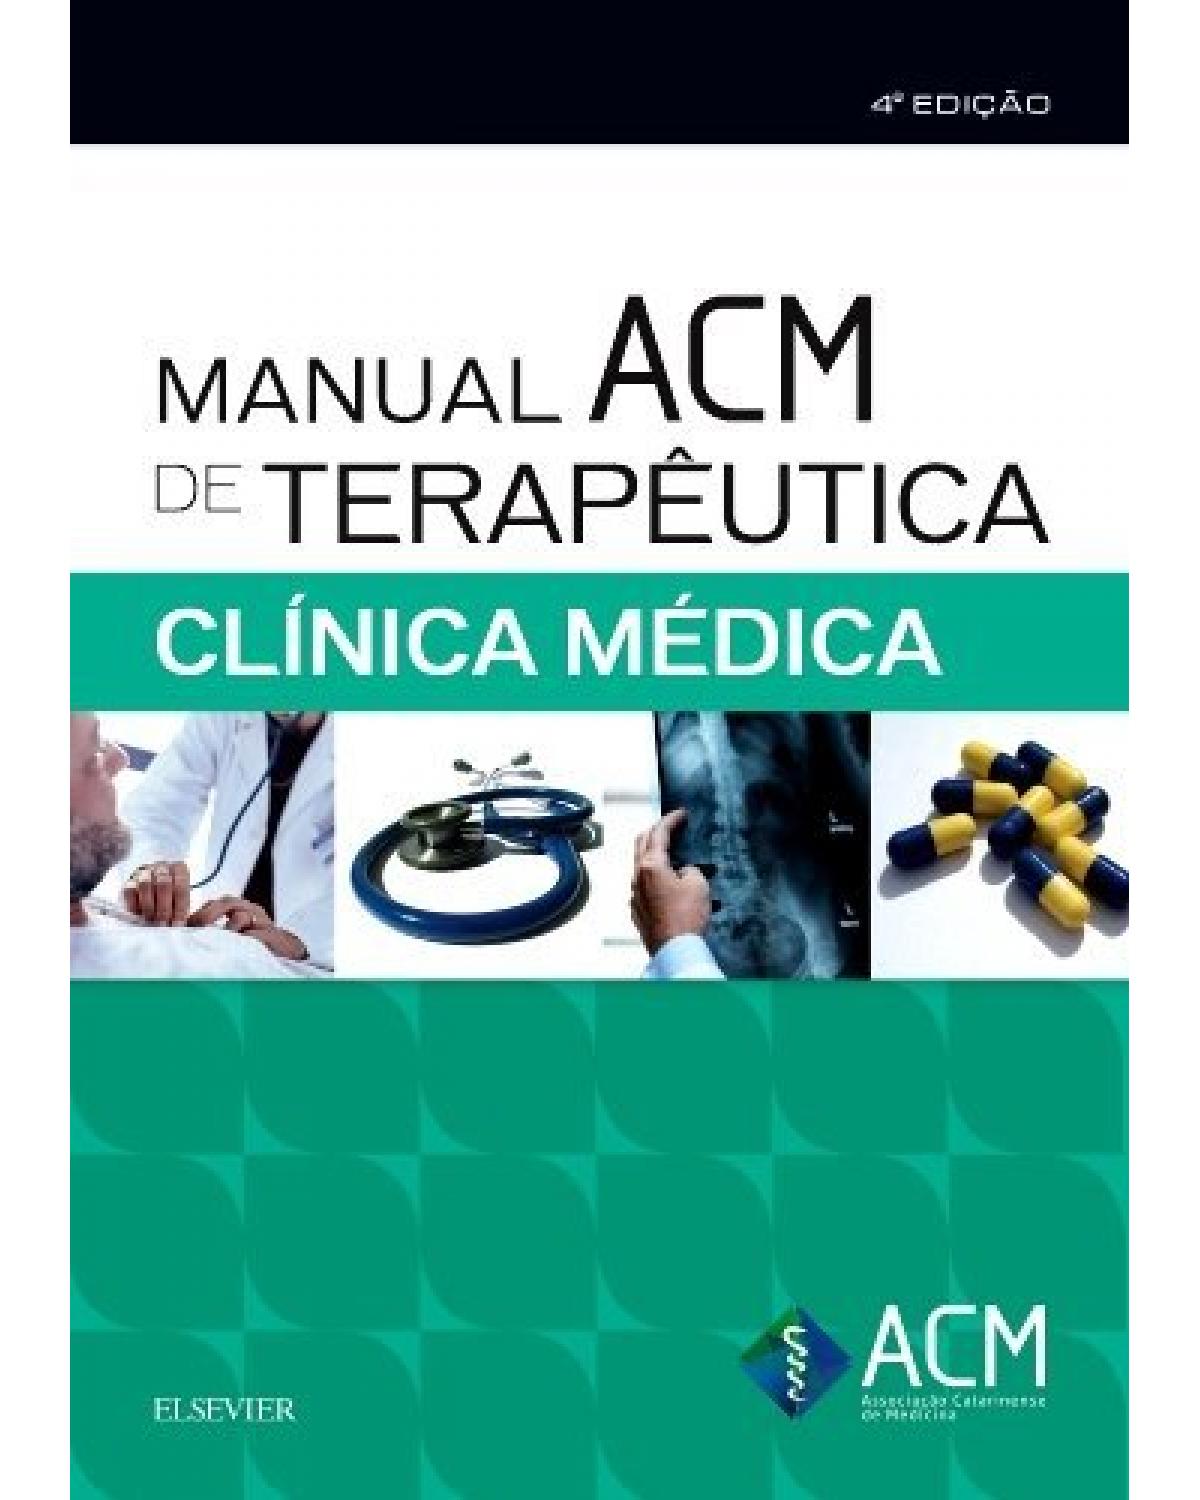 Manual ACM de terapêutica em clínica médica - 4ª Edição | 2018